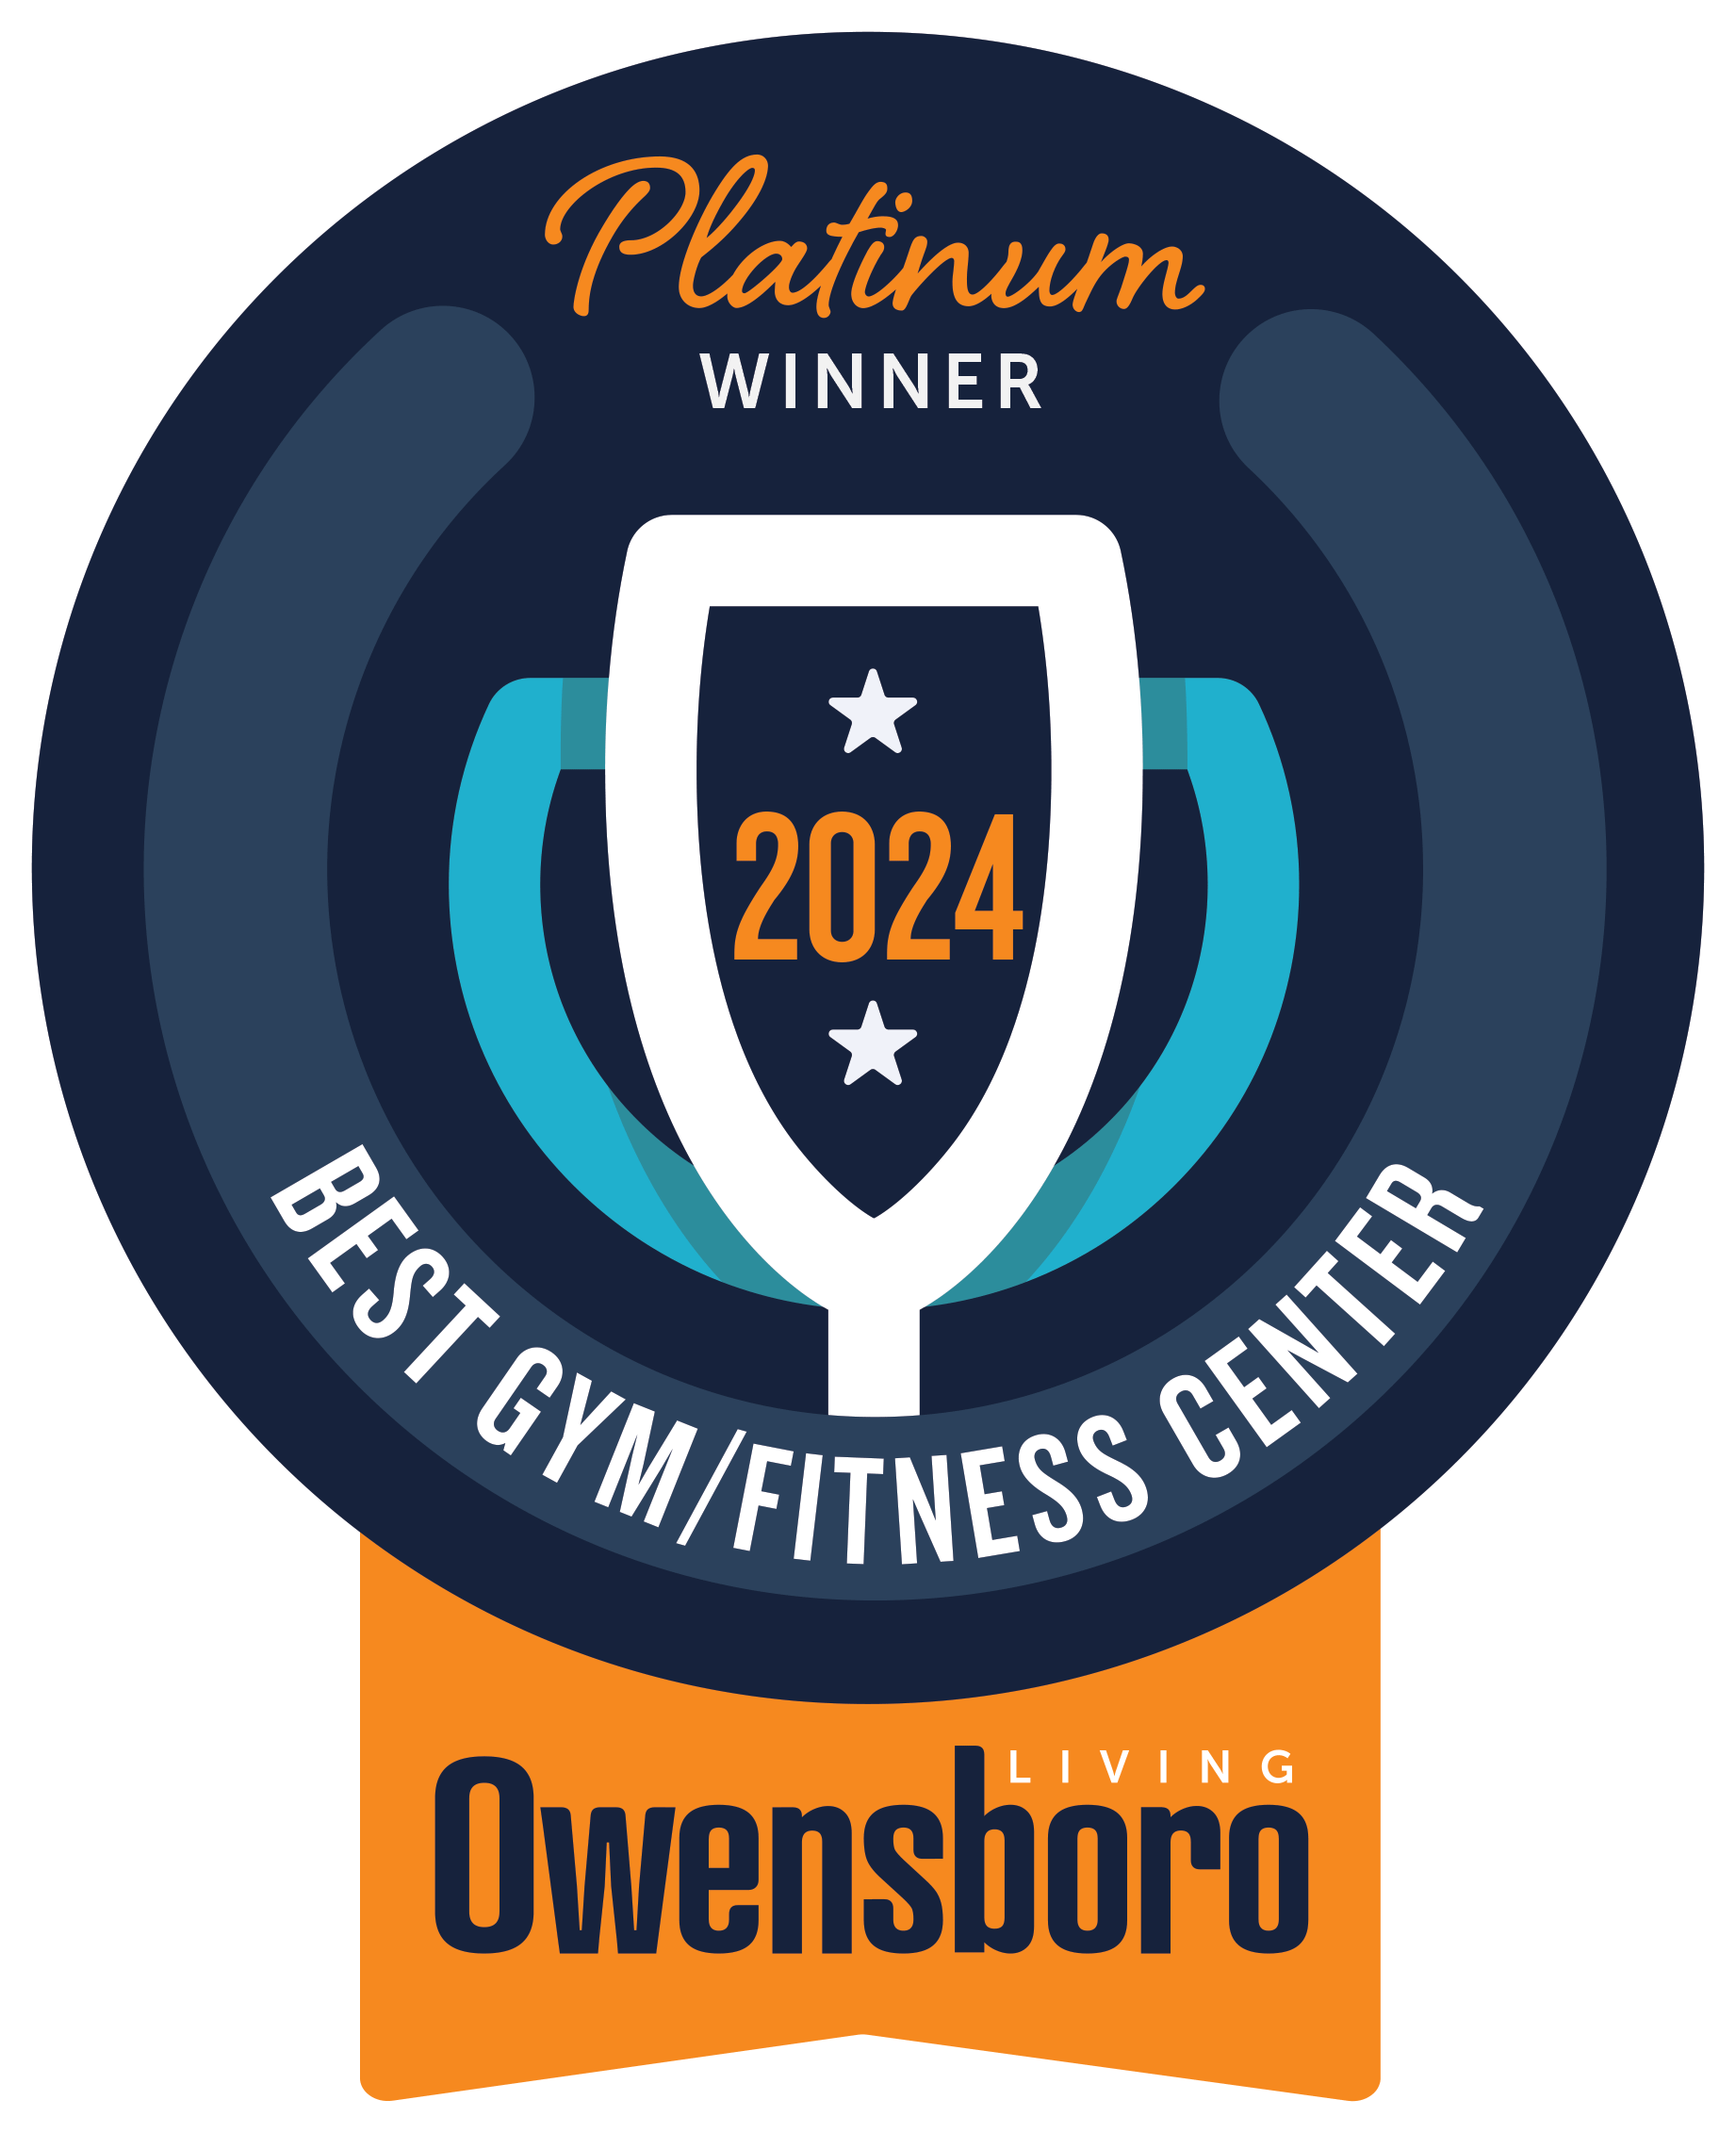 Best Gym 2019 badge